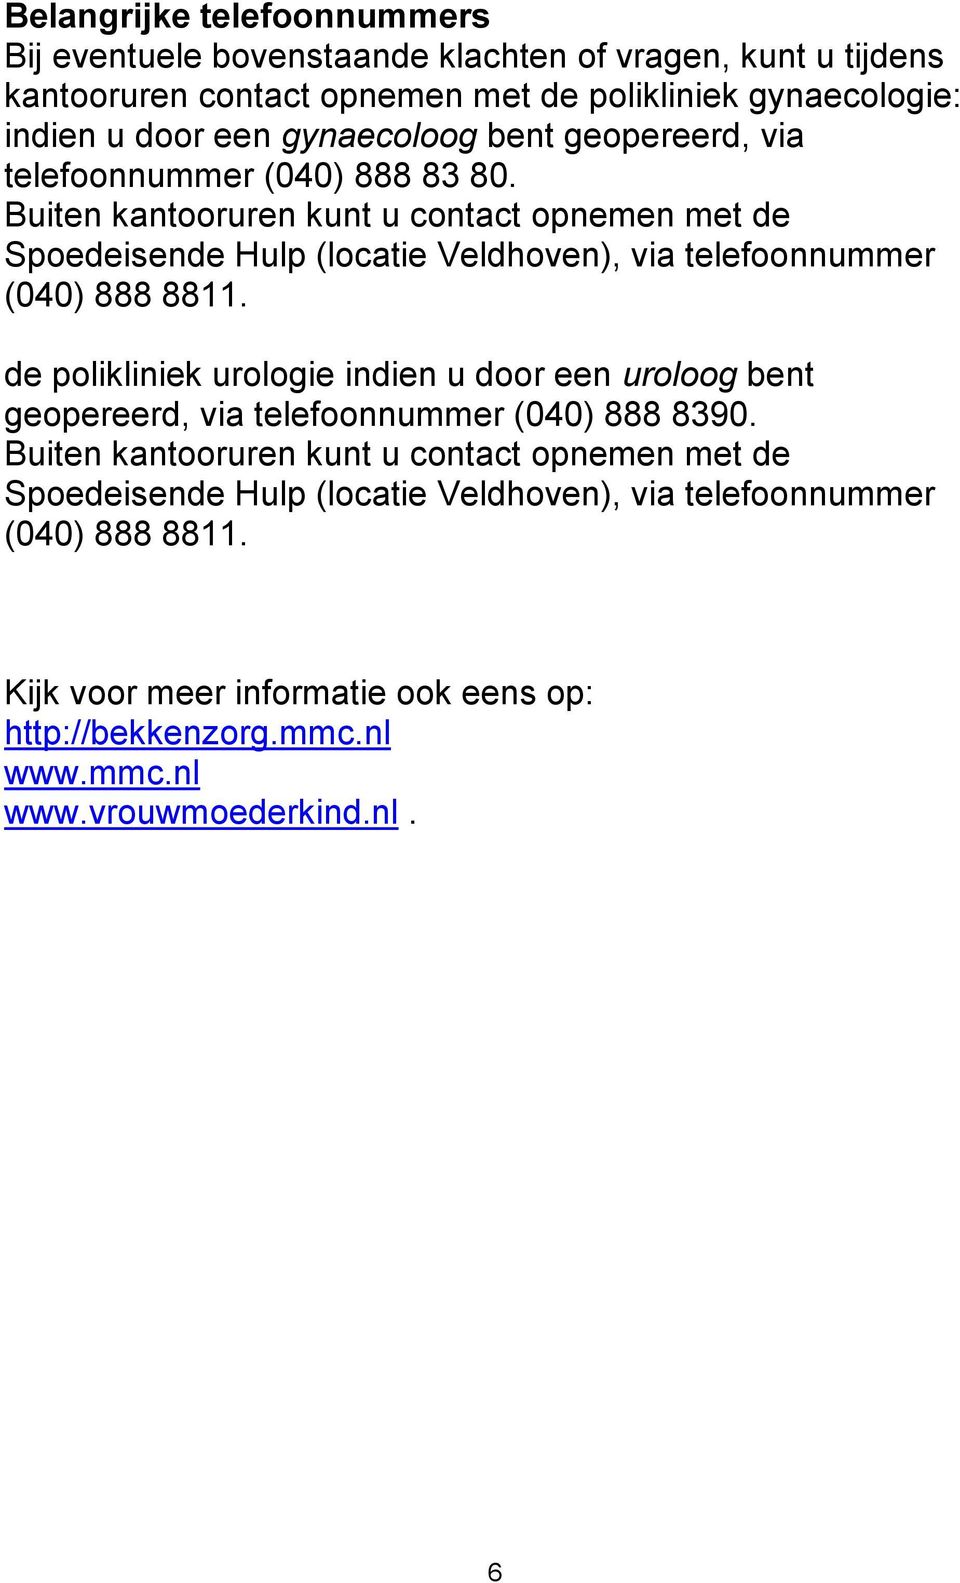 Buiten kantooruren kunt u contact opnemen met de Spoedeisende Hulp (locatie Veldhoven), via telefoonnummer (040) 888 8811.